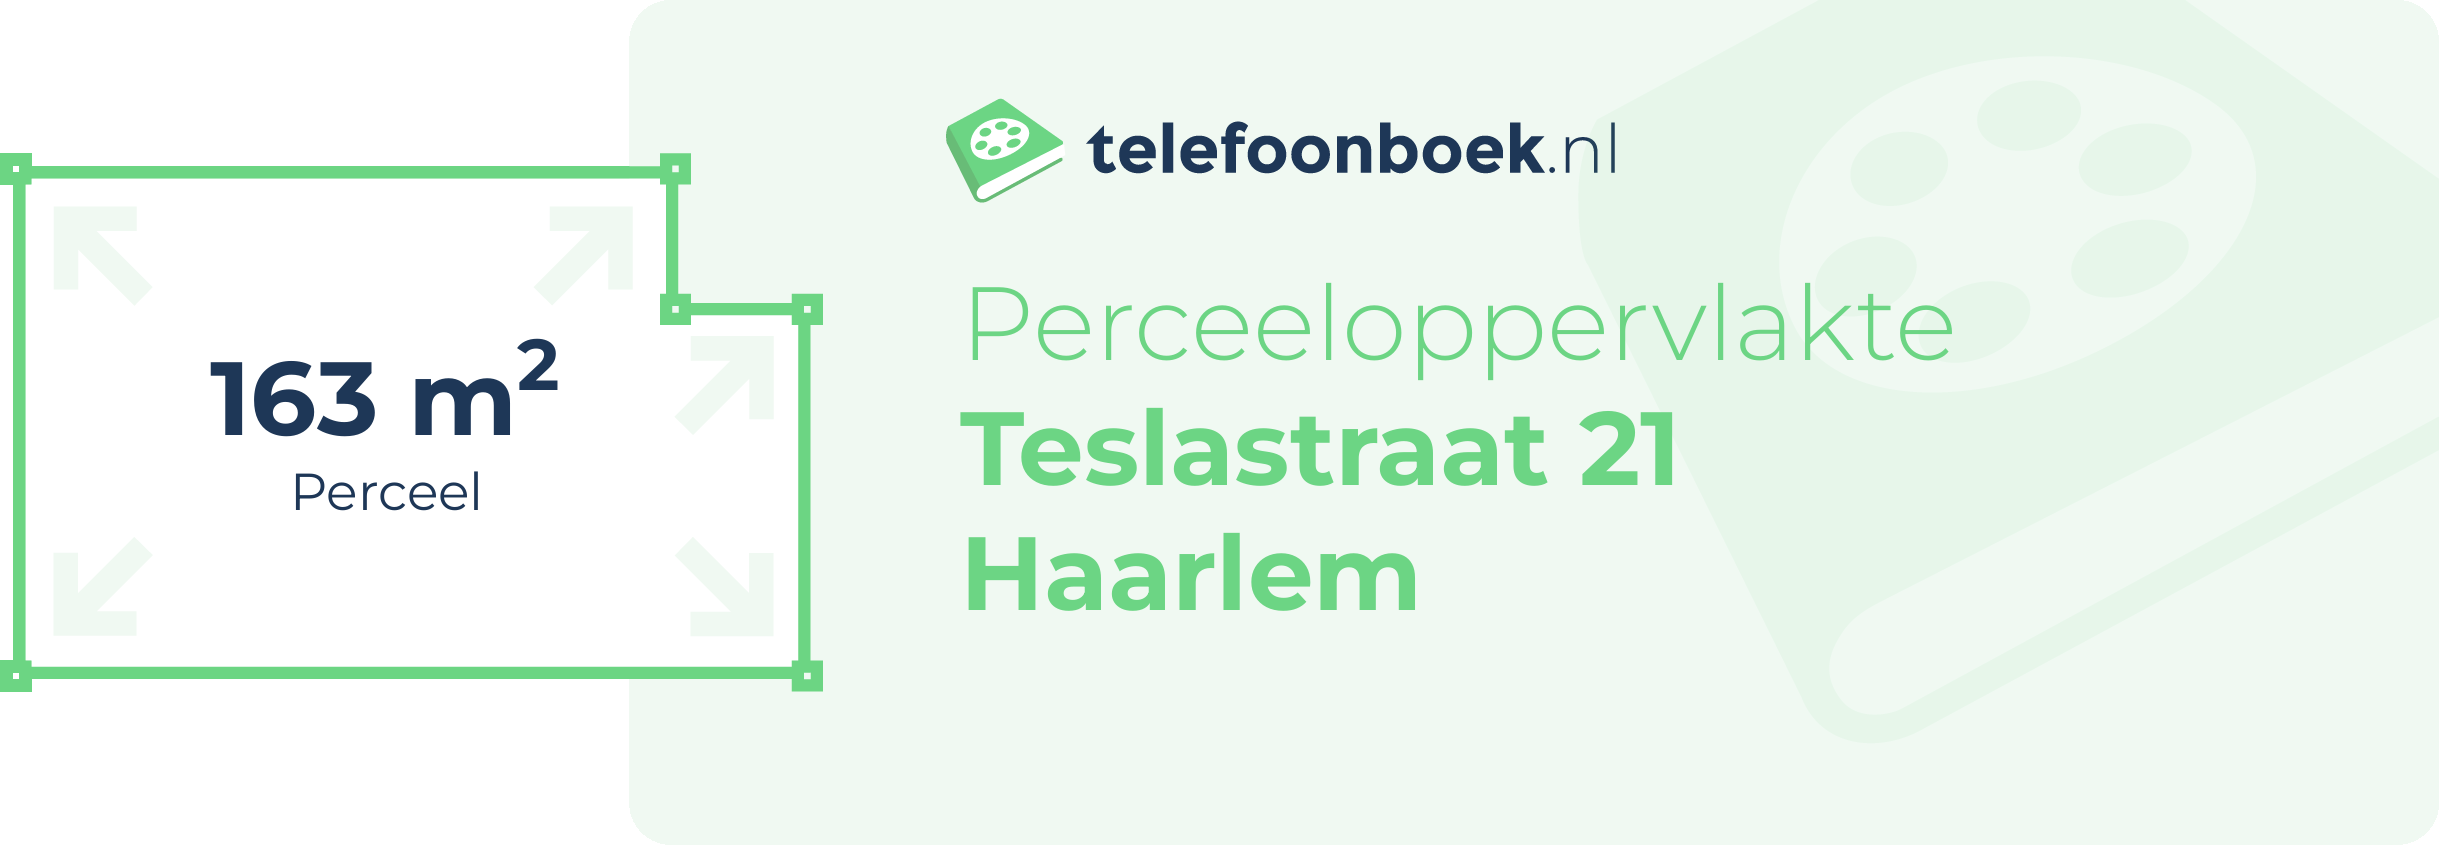 Perceeloppervlakte Teslastraat 21 Haarlem